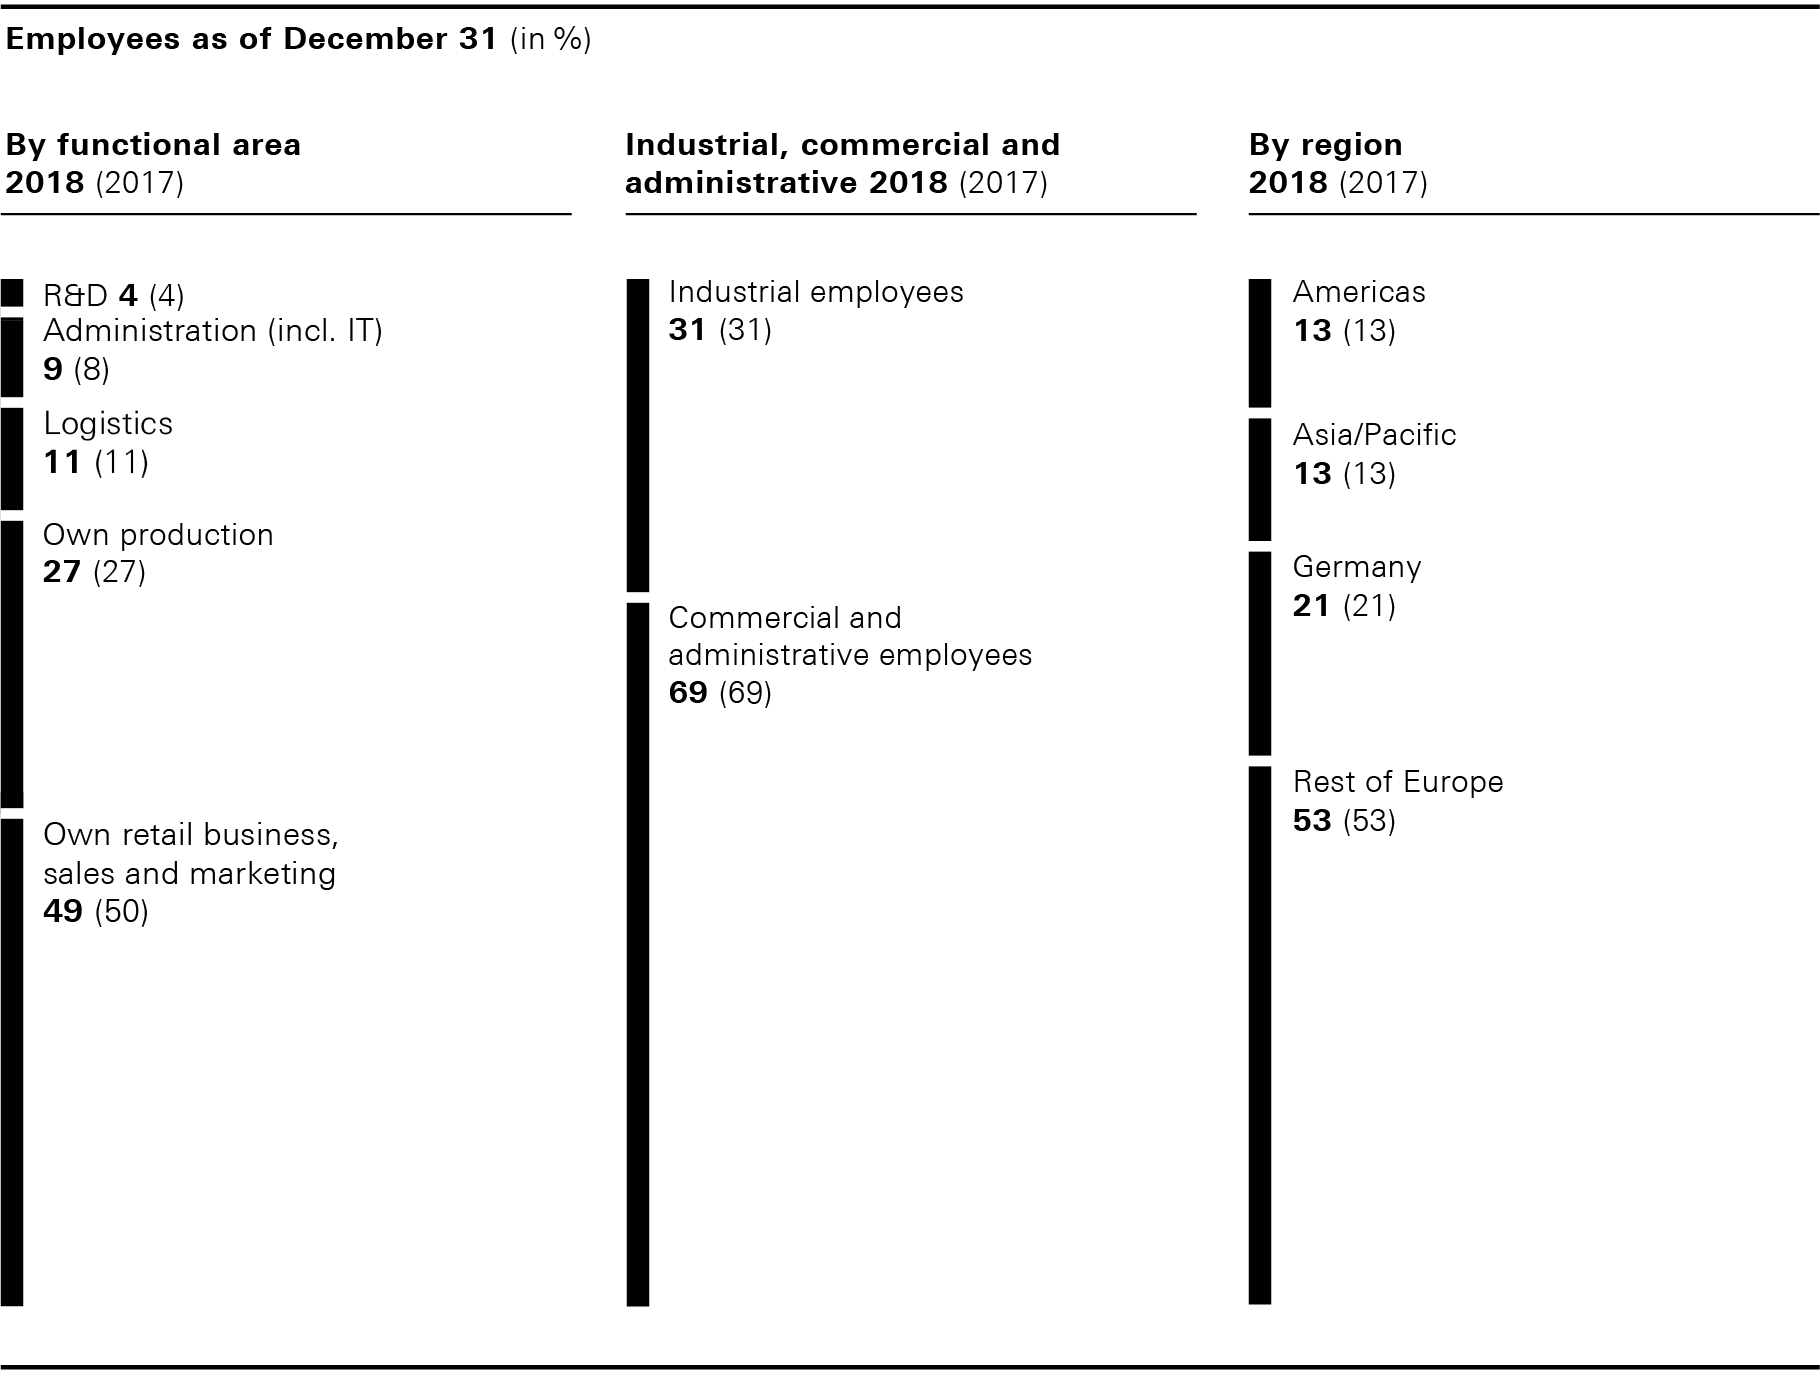 Employees as of December 31 (bar chart)